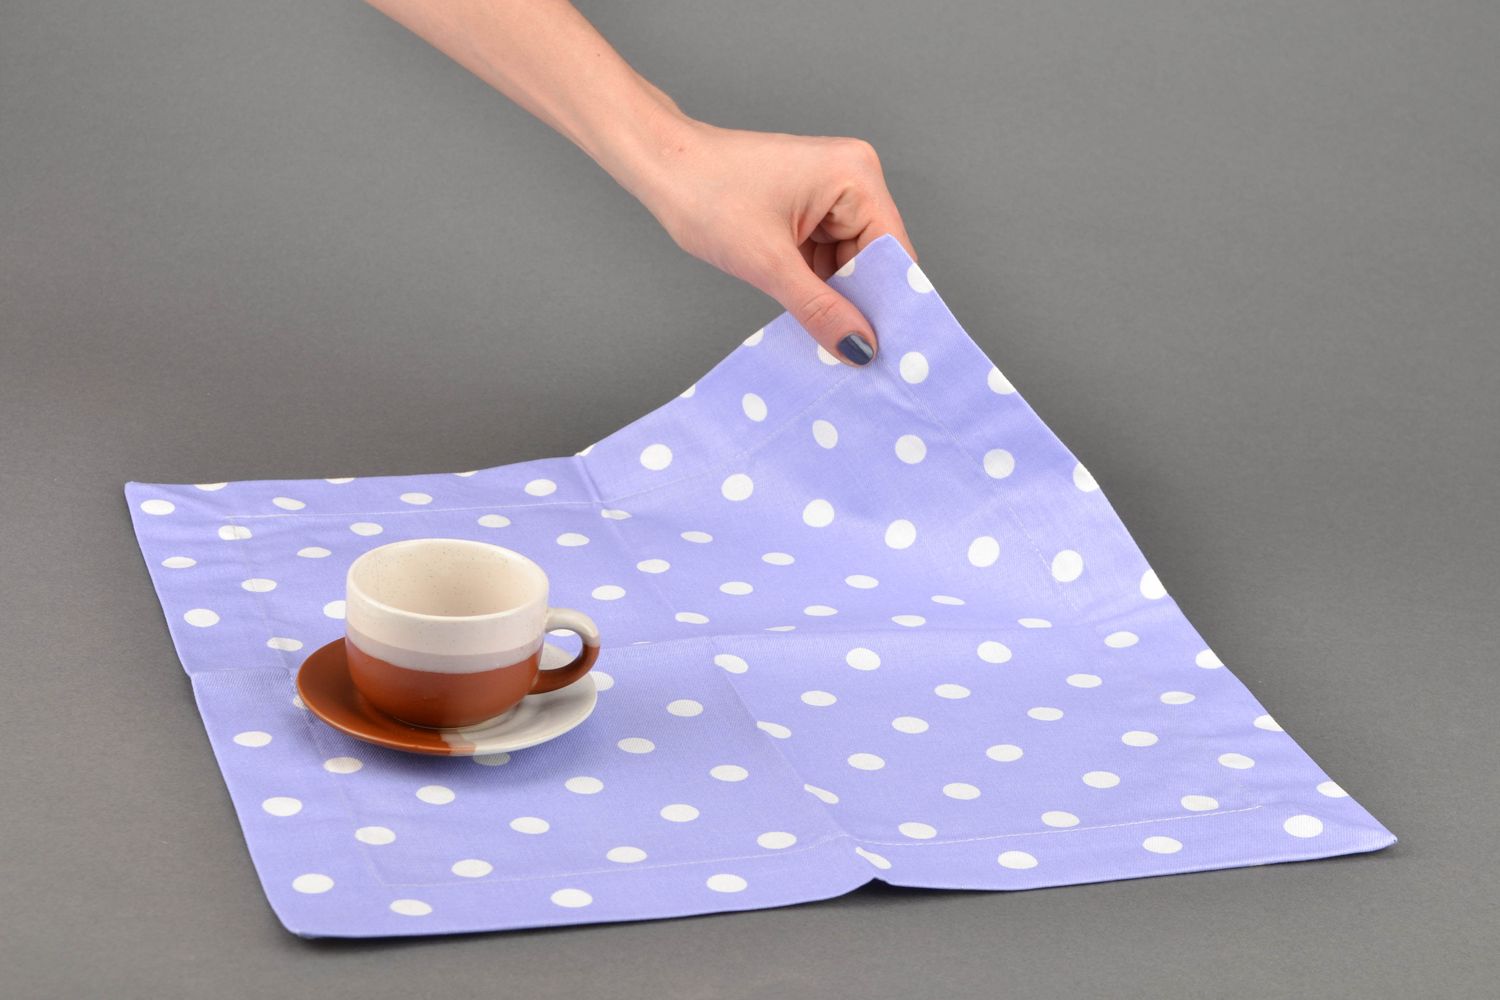 Текстильная салфетка из хлопка на стол фото 2